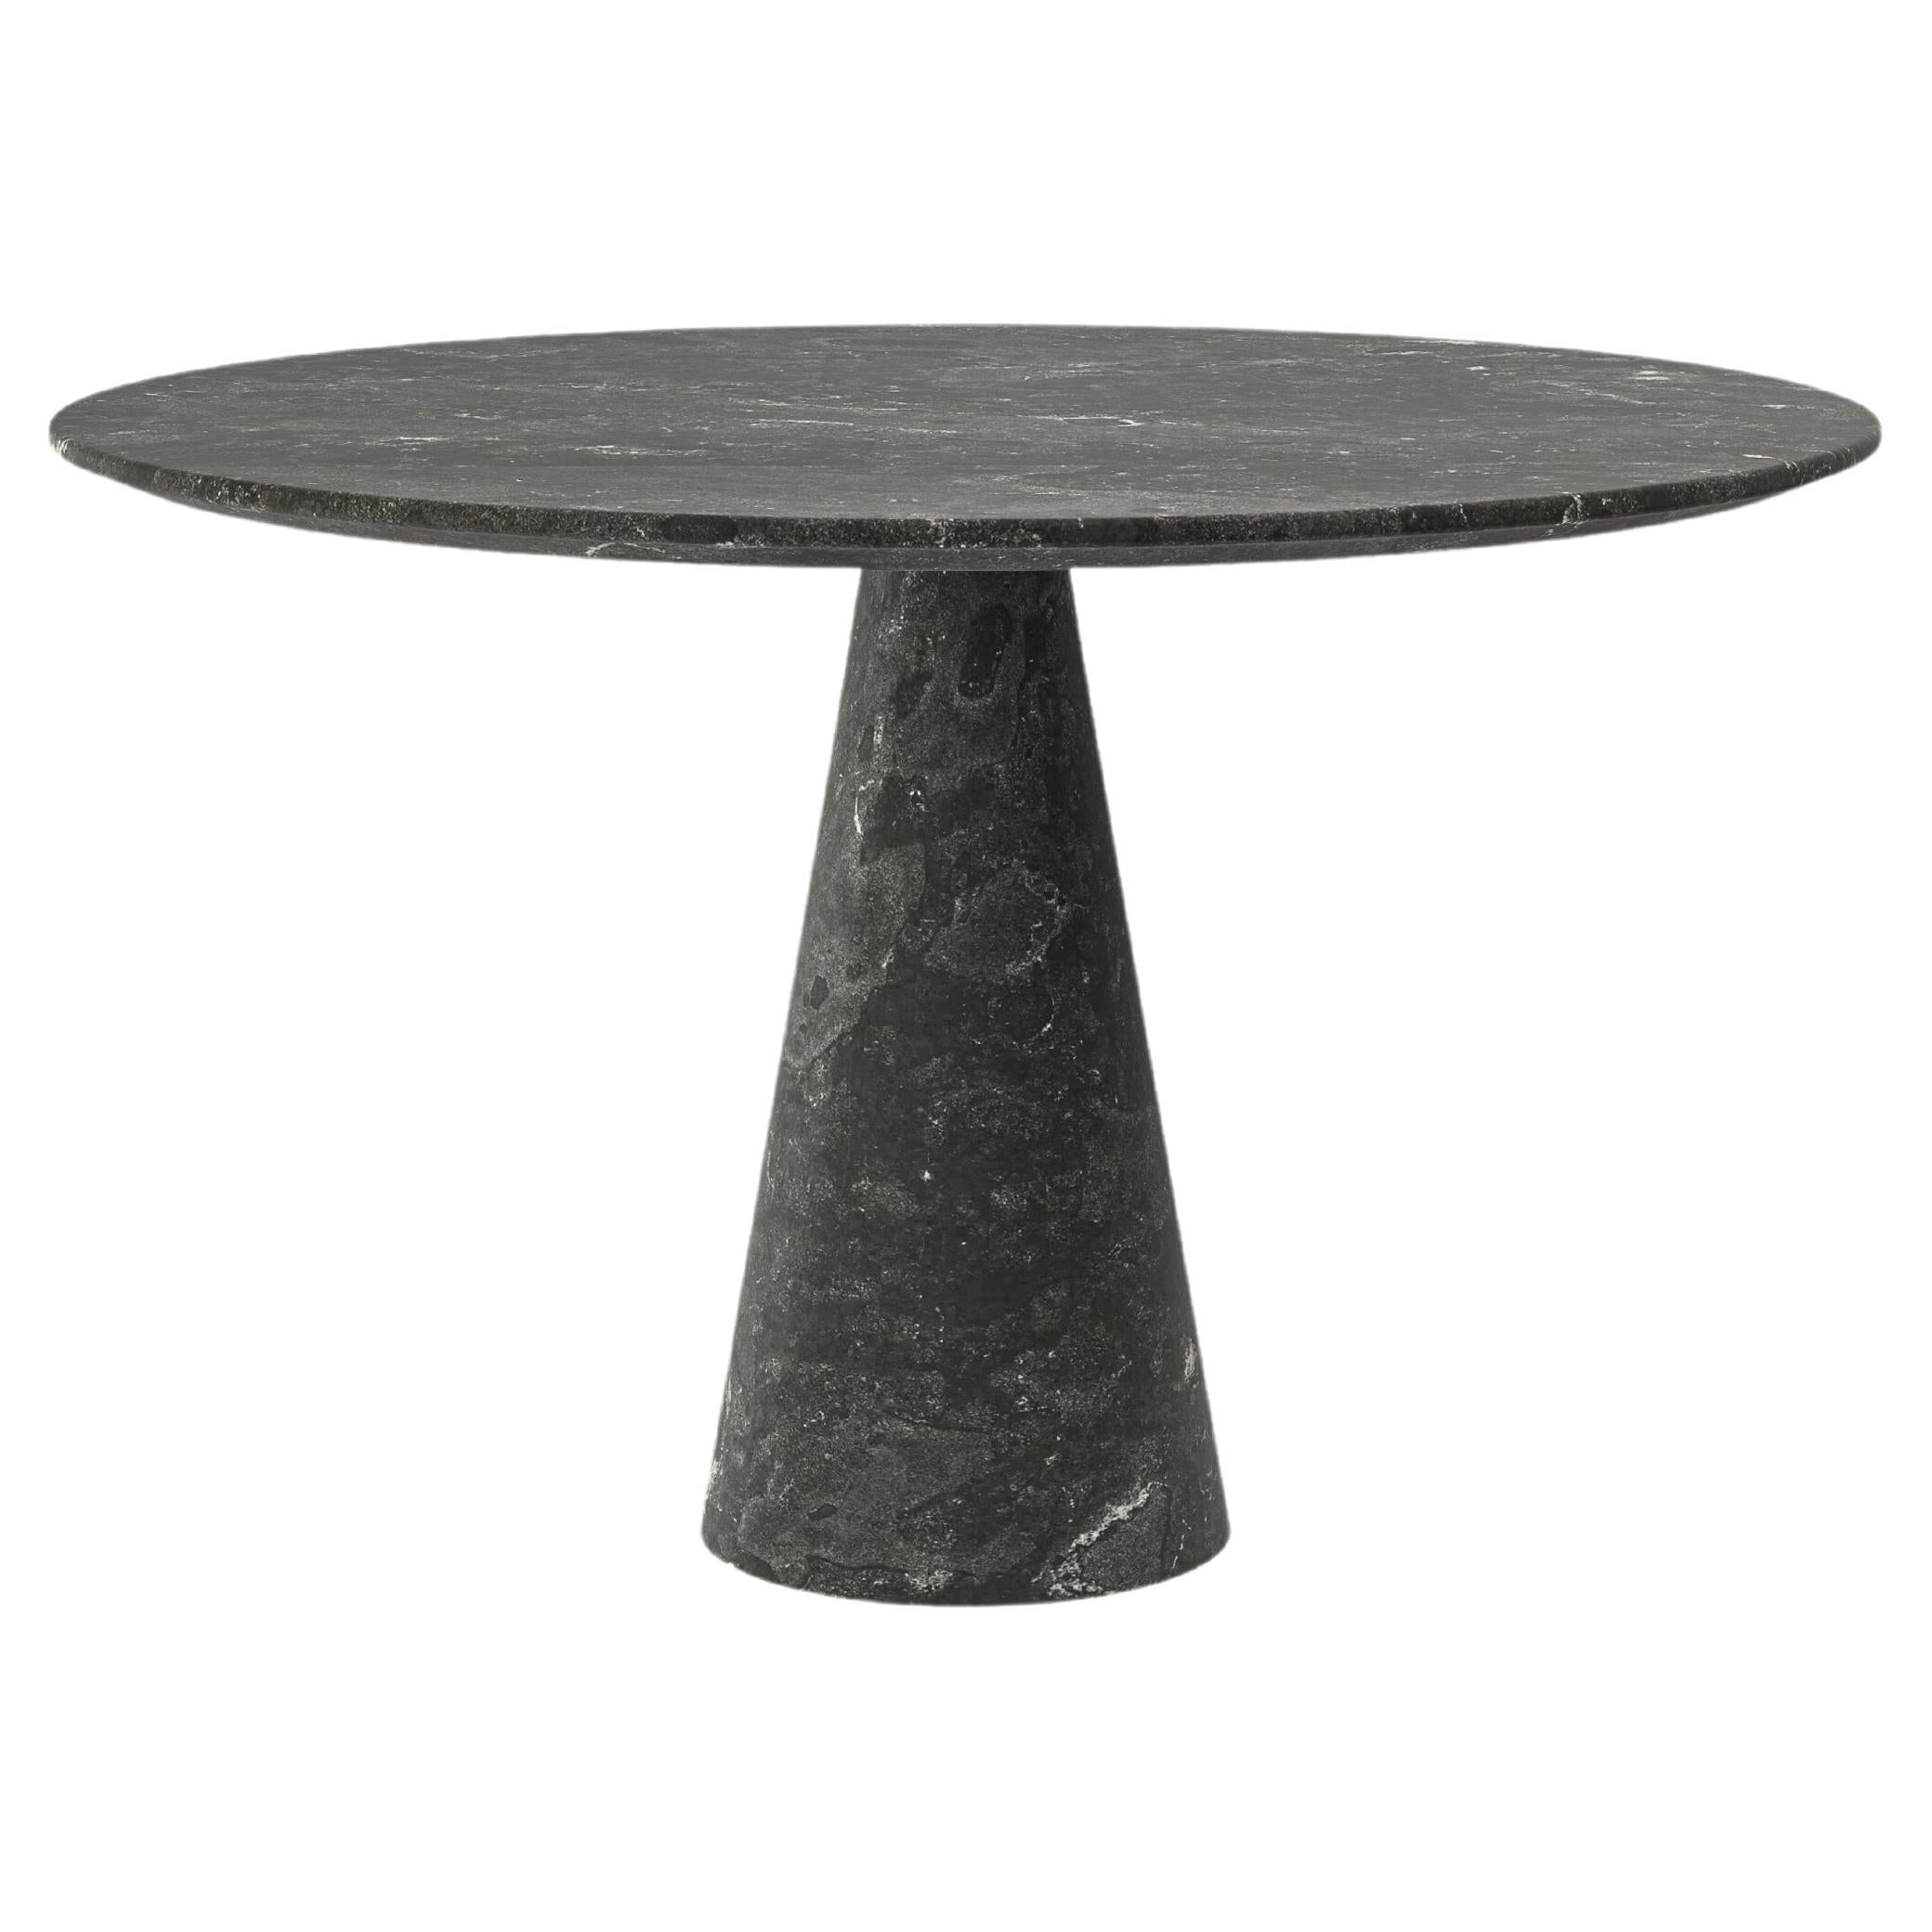 FORM(LA) Cono Table de salle à manger ronde 42L x 42W x 30H Nero Petite Granite